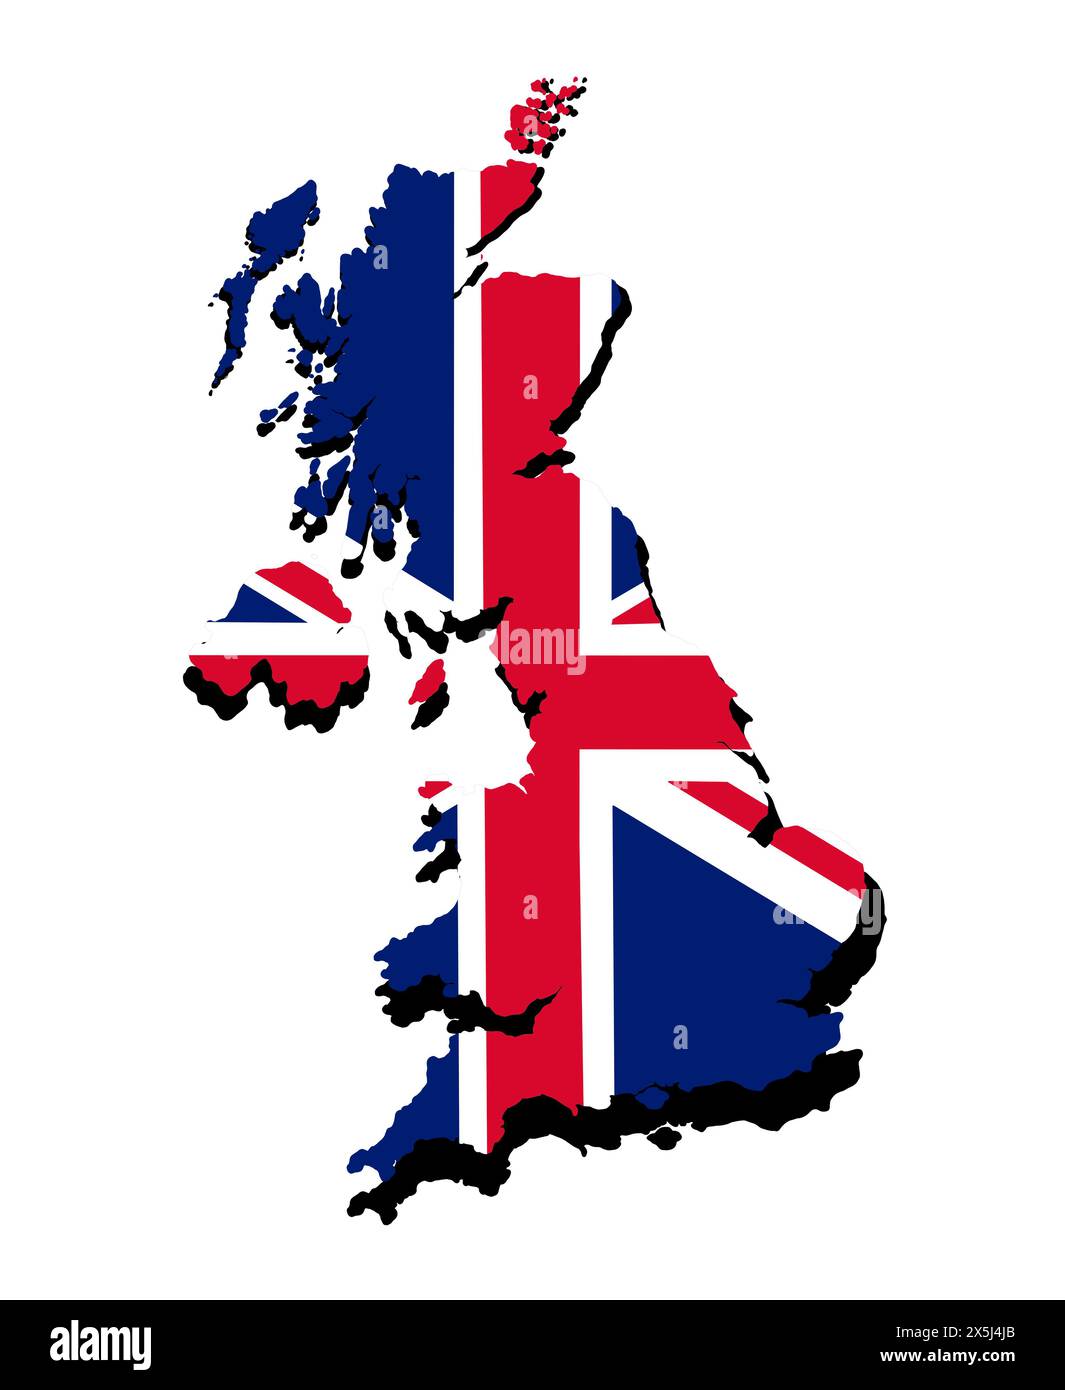 Karte von Großbritannien in Nationalflaggenfarben. Abbildung des europäischen Landes. Stockfoto